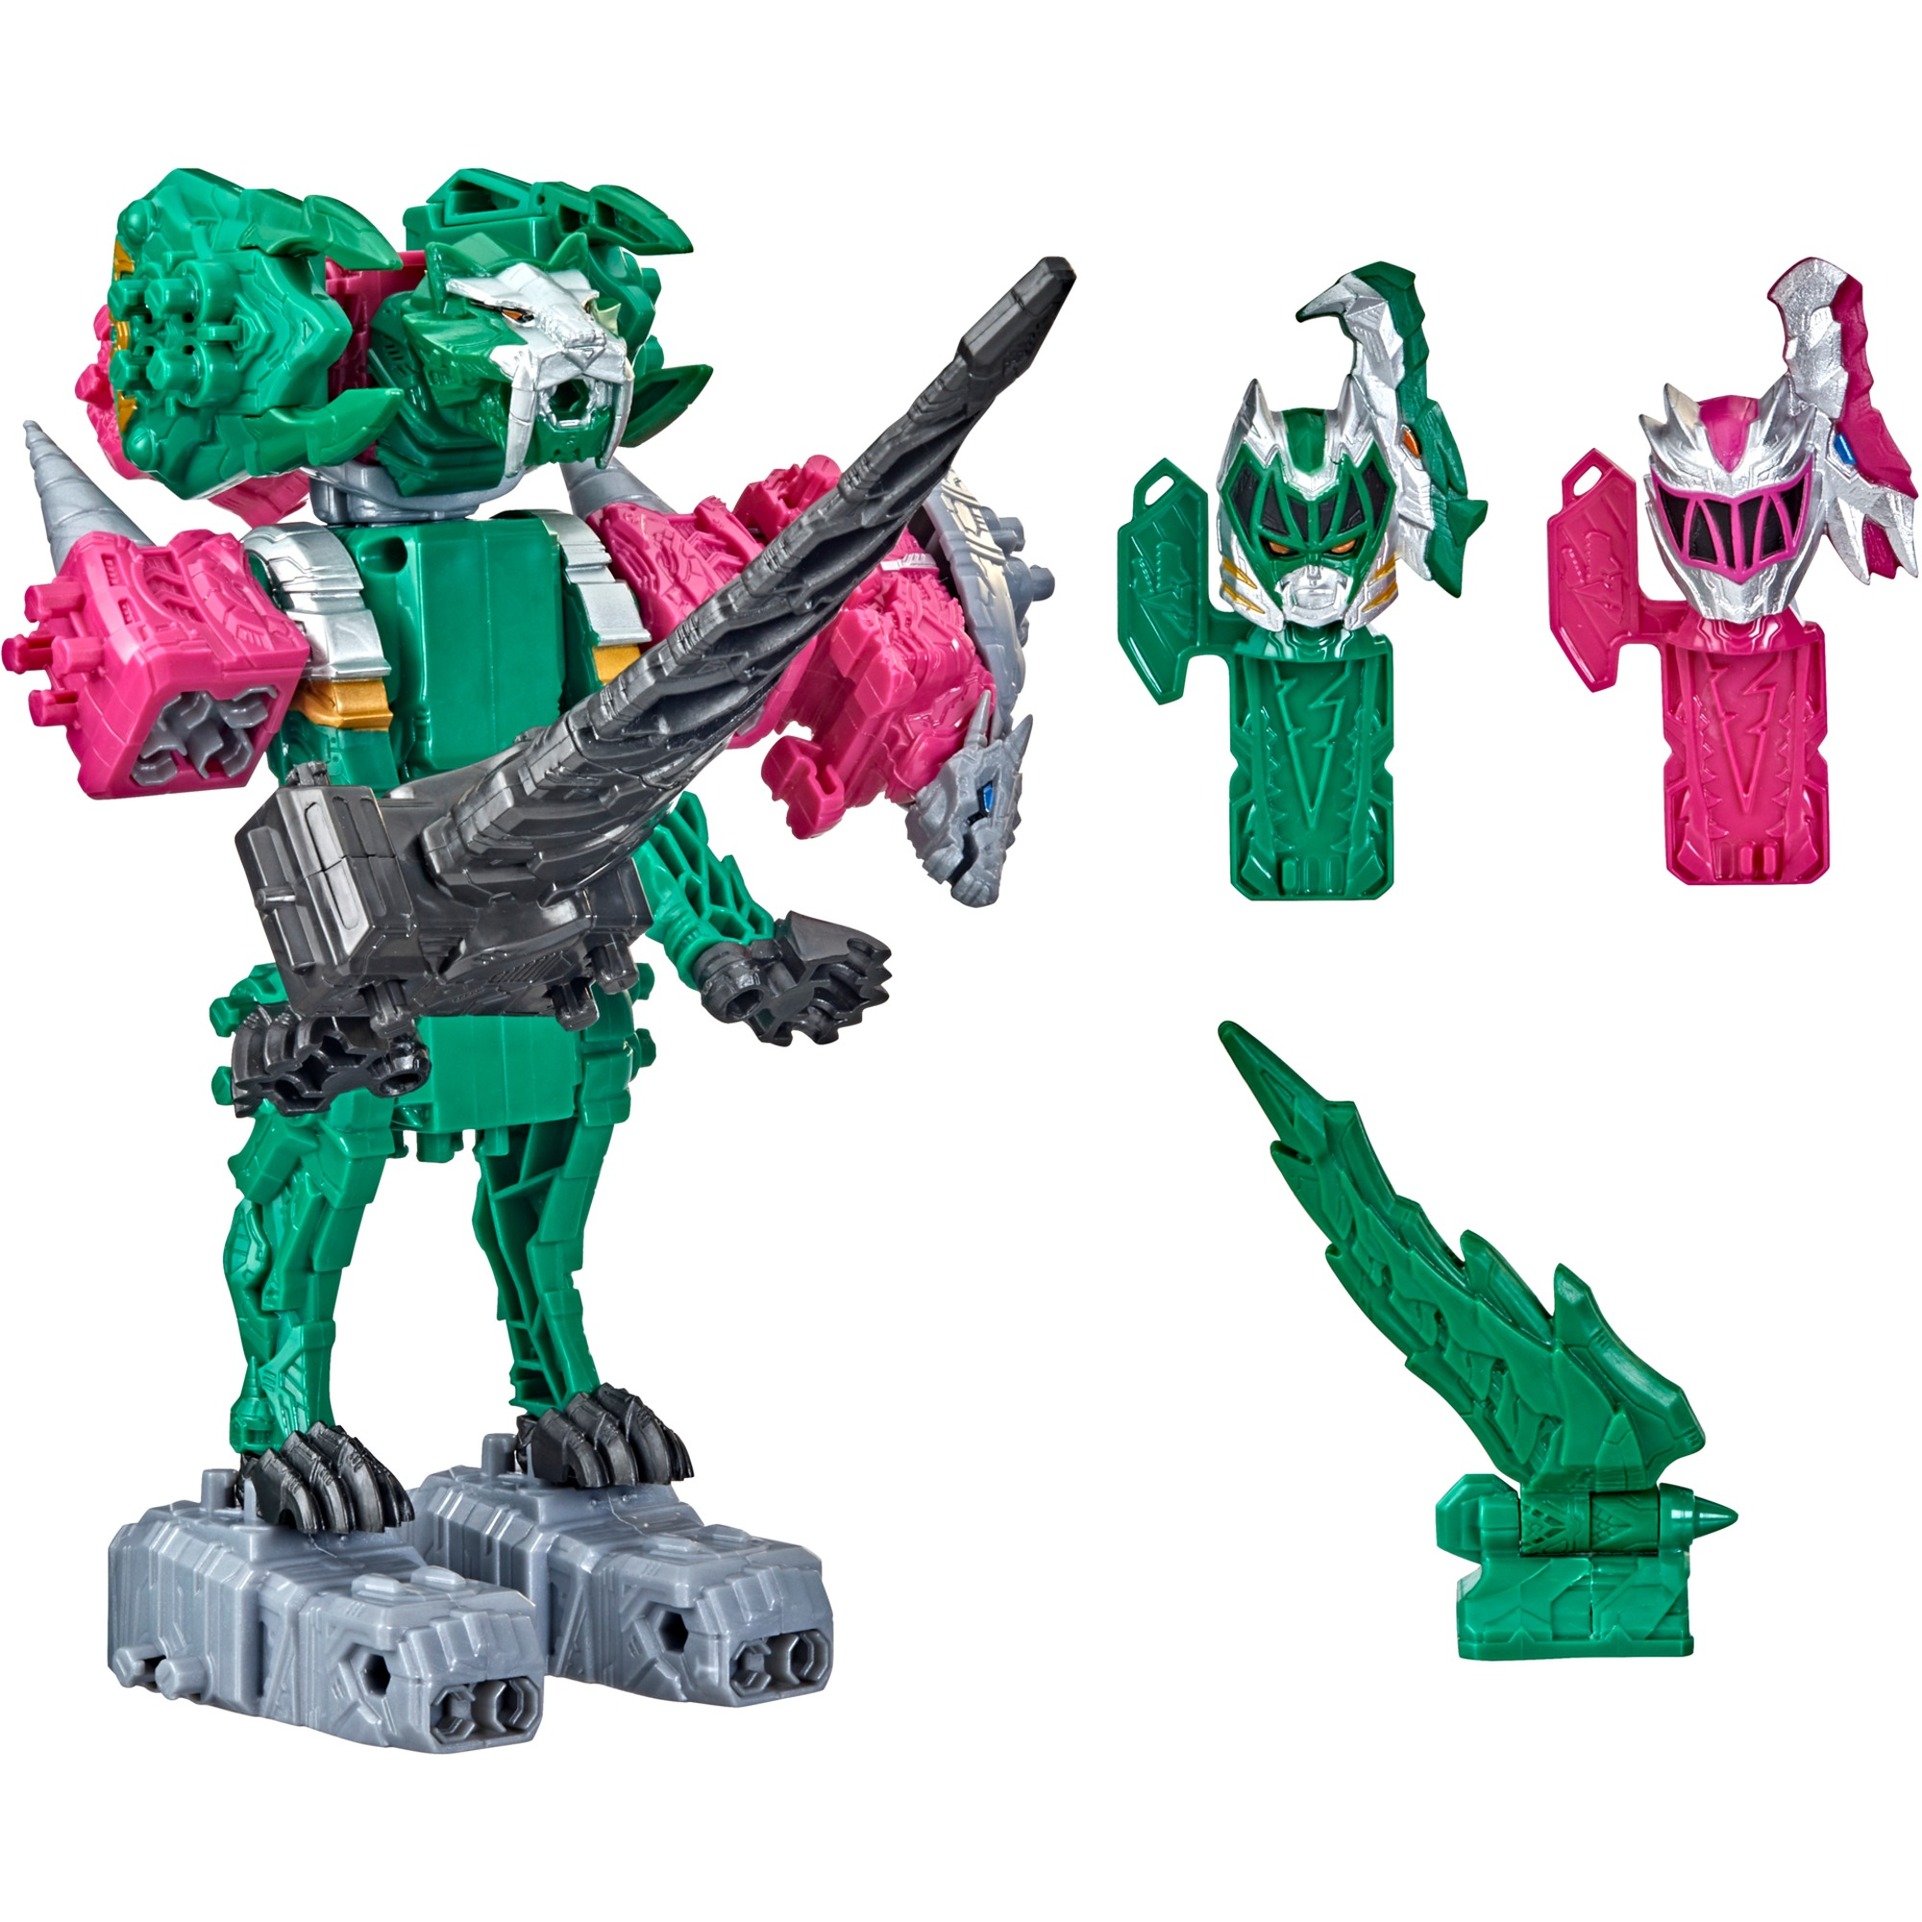 Image of Alternate - Power Rangers Dino Fury Pinker Ankylo Hammer und Grüner Tiger Claw Zord, Spielfigur online einkaufen bei Alternate